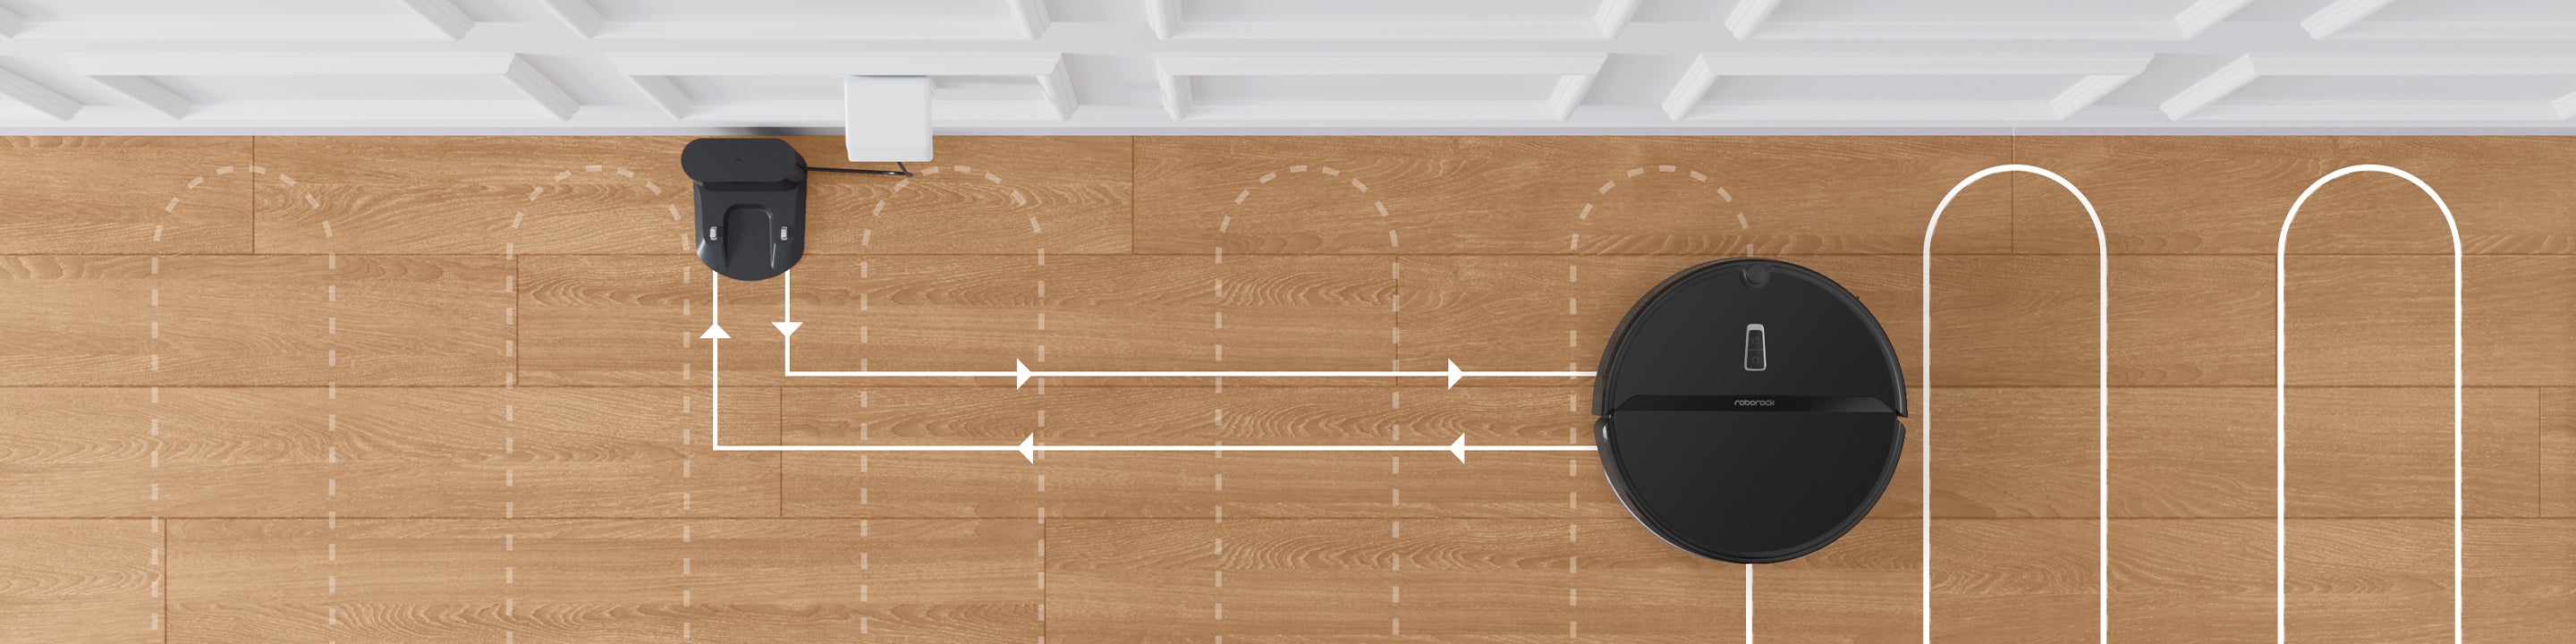 Roborock E4는 자동 충전 기능을 사용하여 넓은 집을 손쉽게 청소합니다